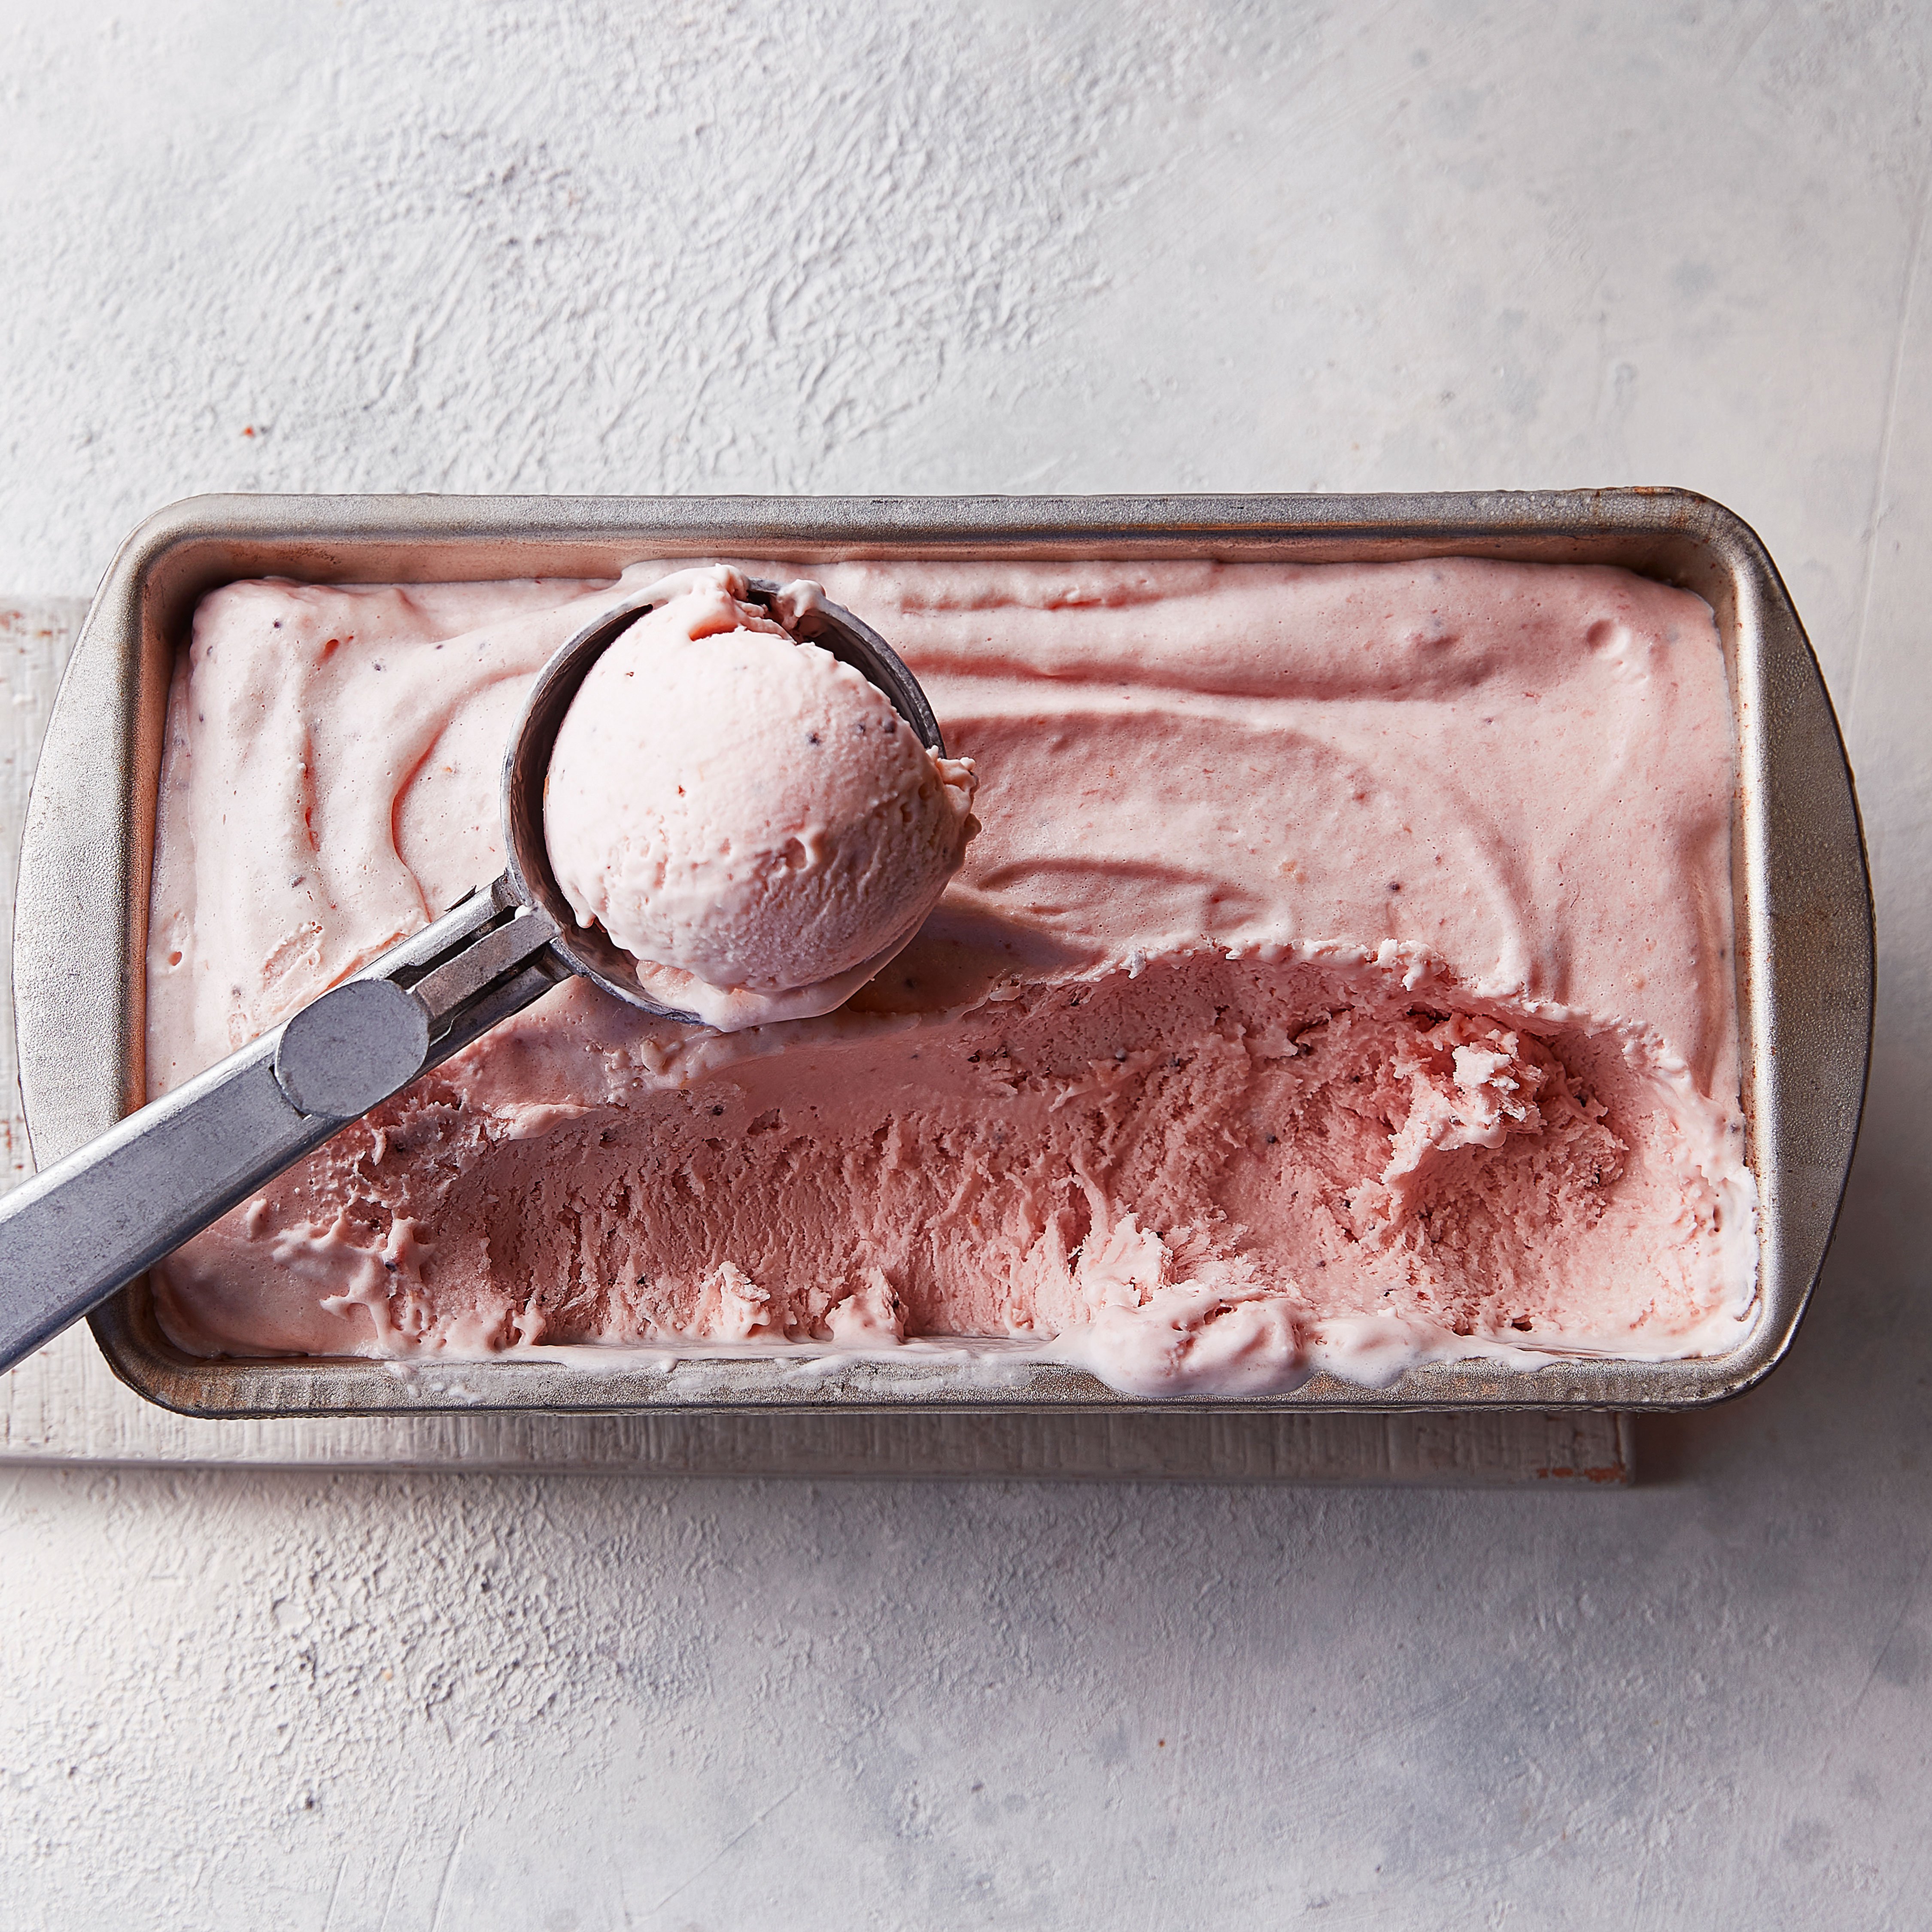 Cheat’s strawberry & clotted cream ice cream